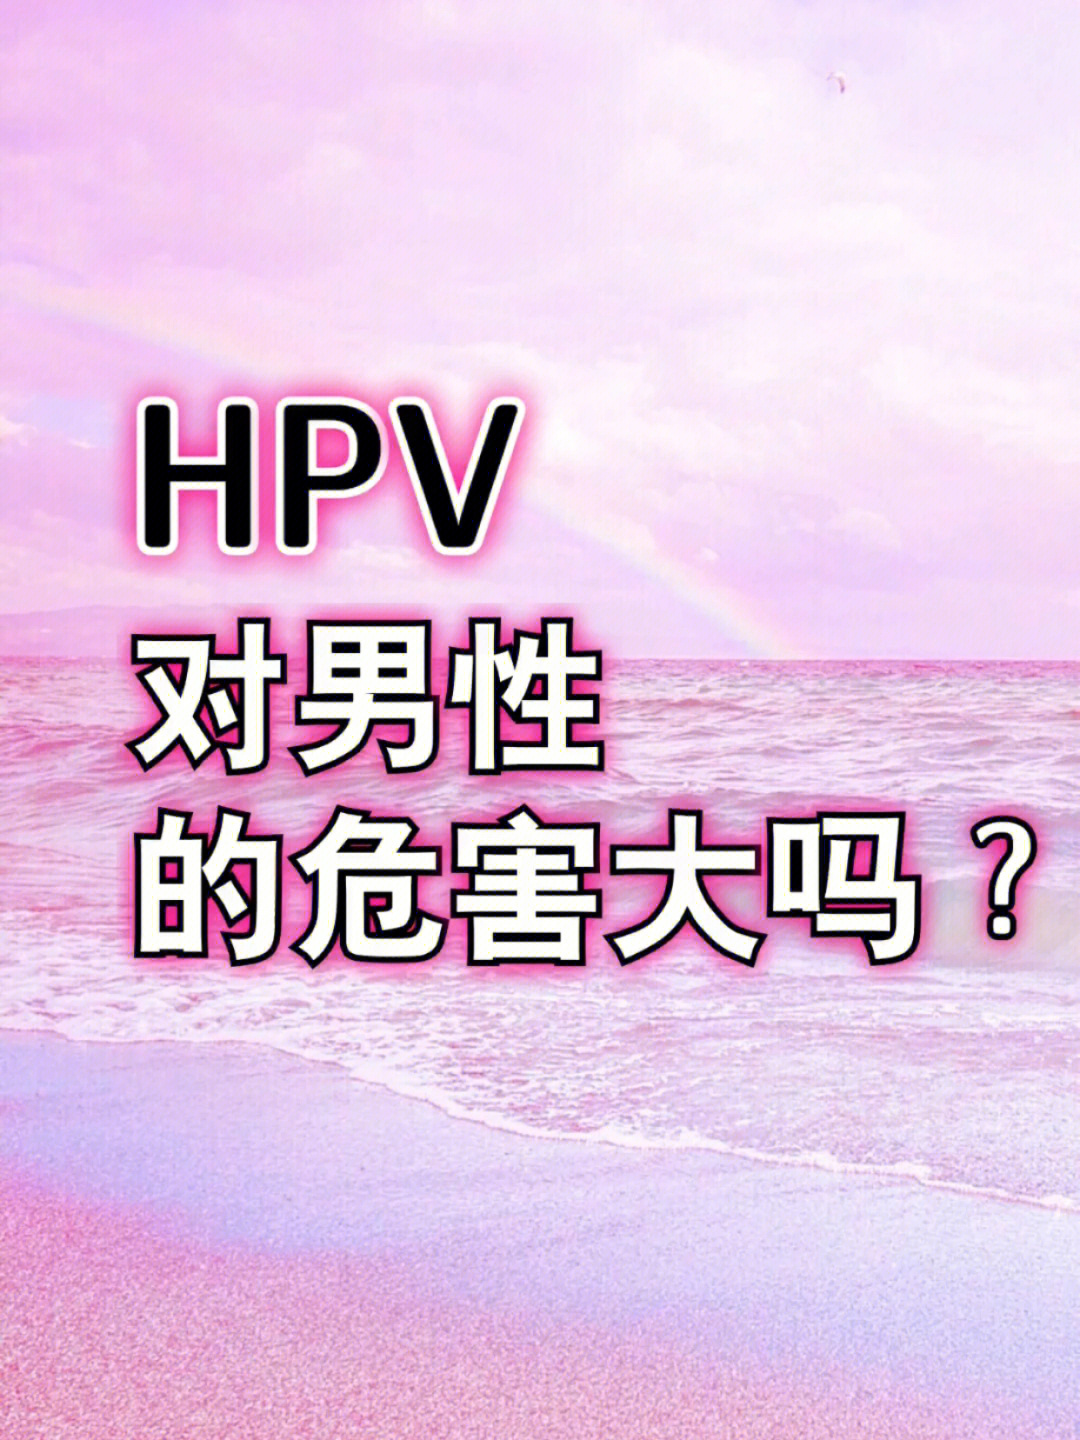 hpv早期症状图片男图片